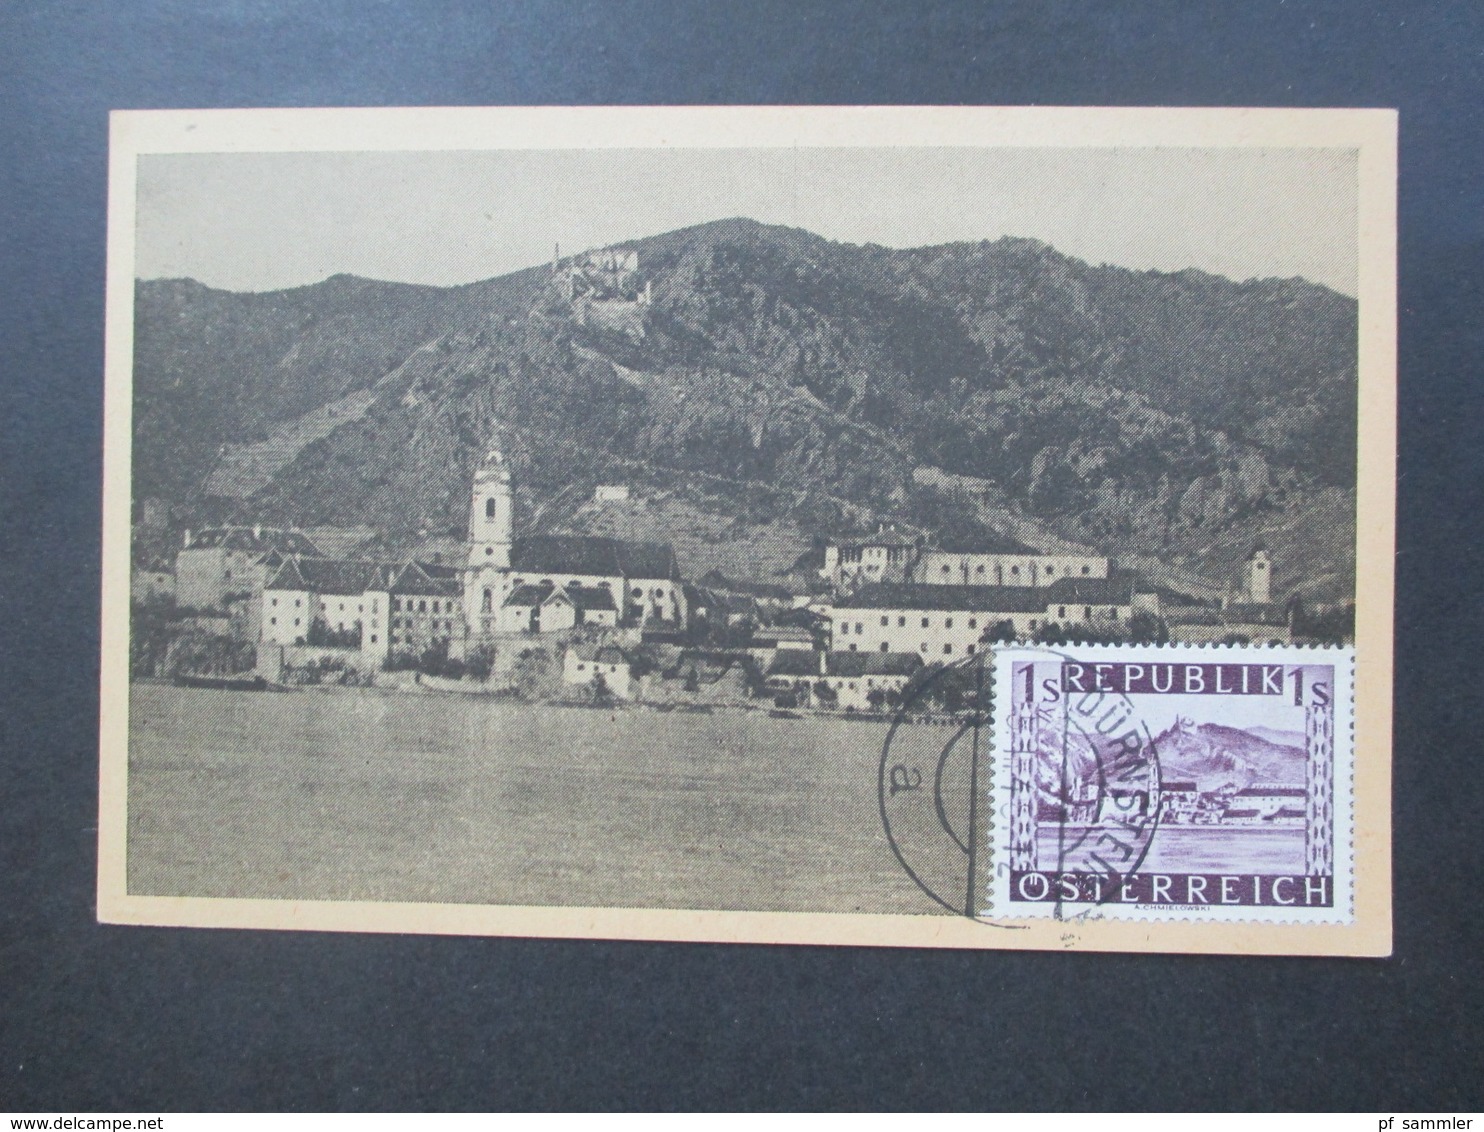 Österreich 1947 Nr. 850 Maximumkarte Dürnstein Wachau U.M.I.A.I.A. Sektion Österreich Durnstein Postlagernd Bergverlag - Briefe U. Dokumente